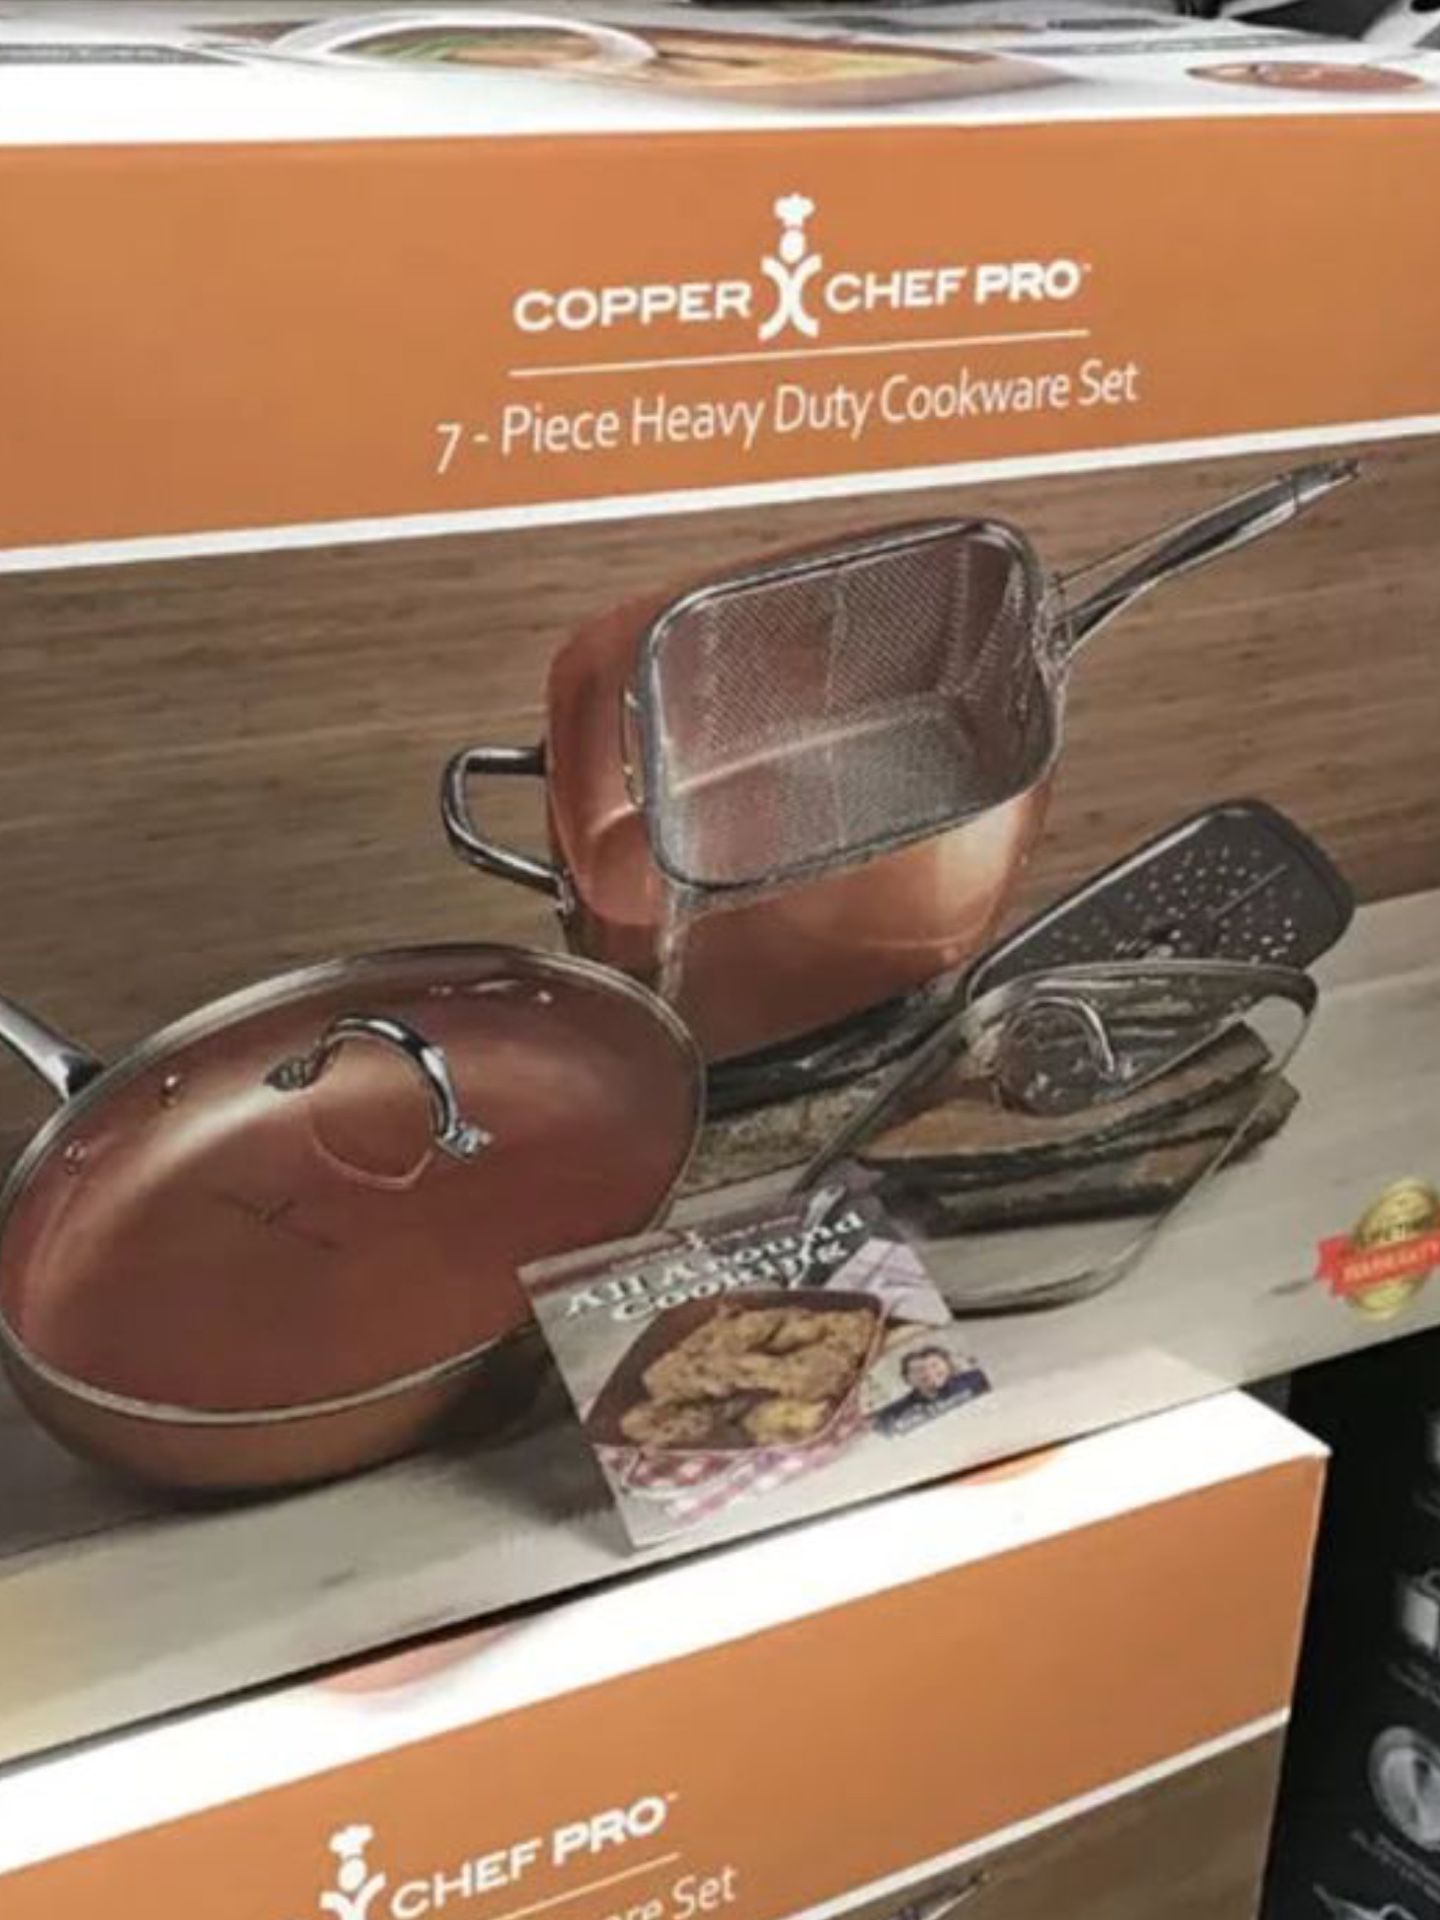 Copper chef pro 7 piece heavy duty cookware set new in box